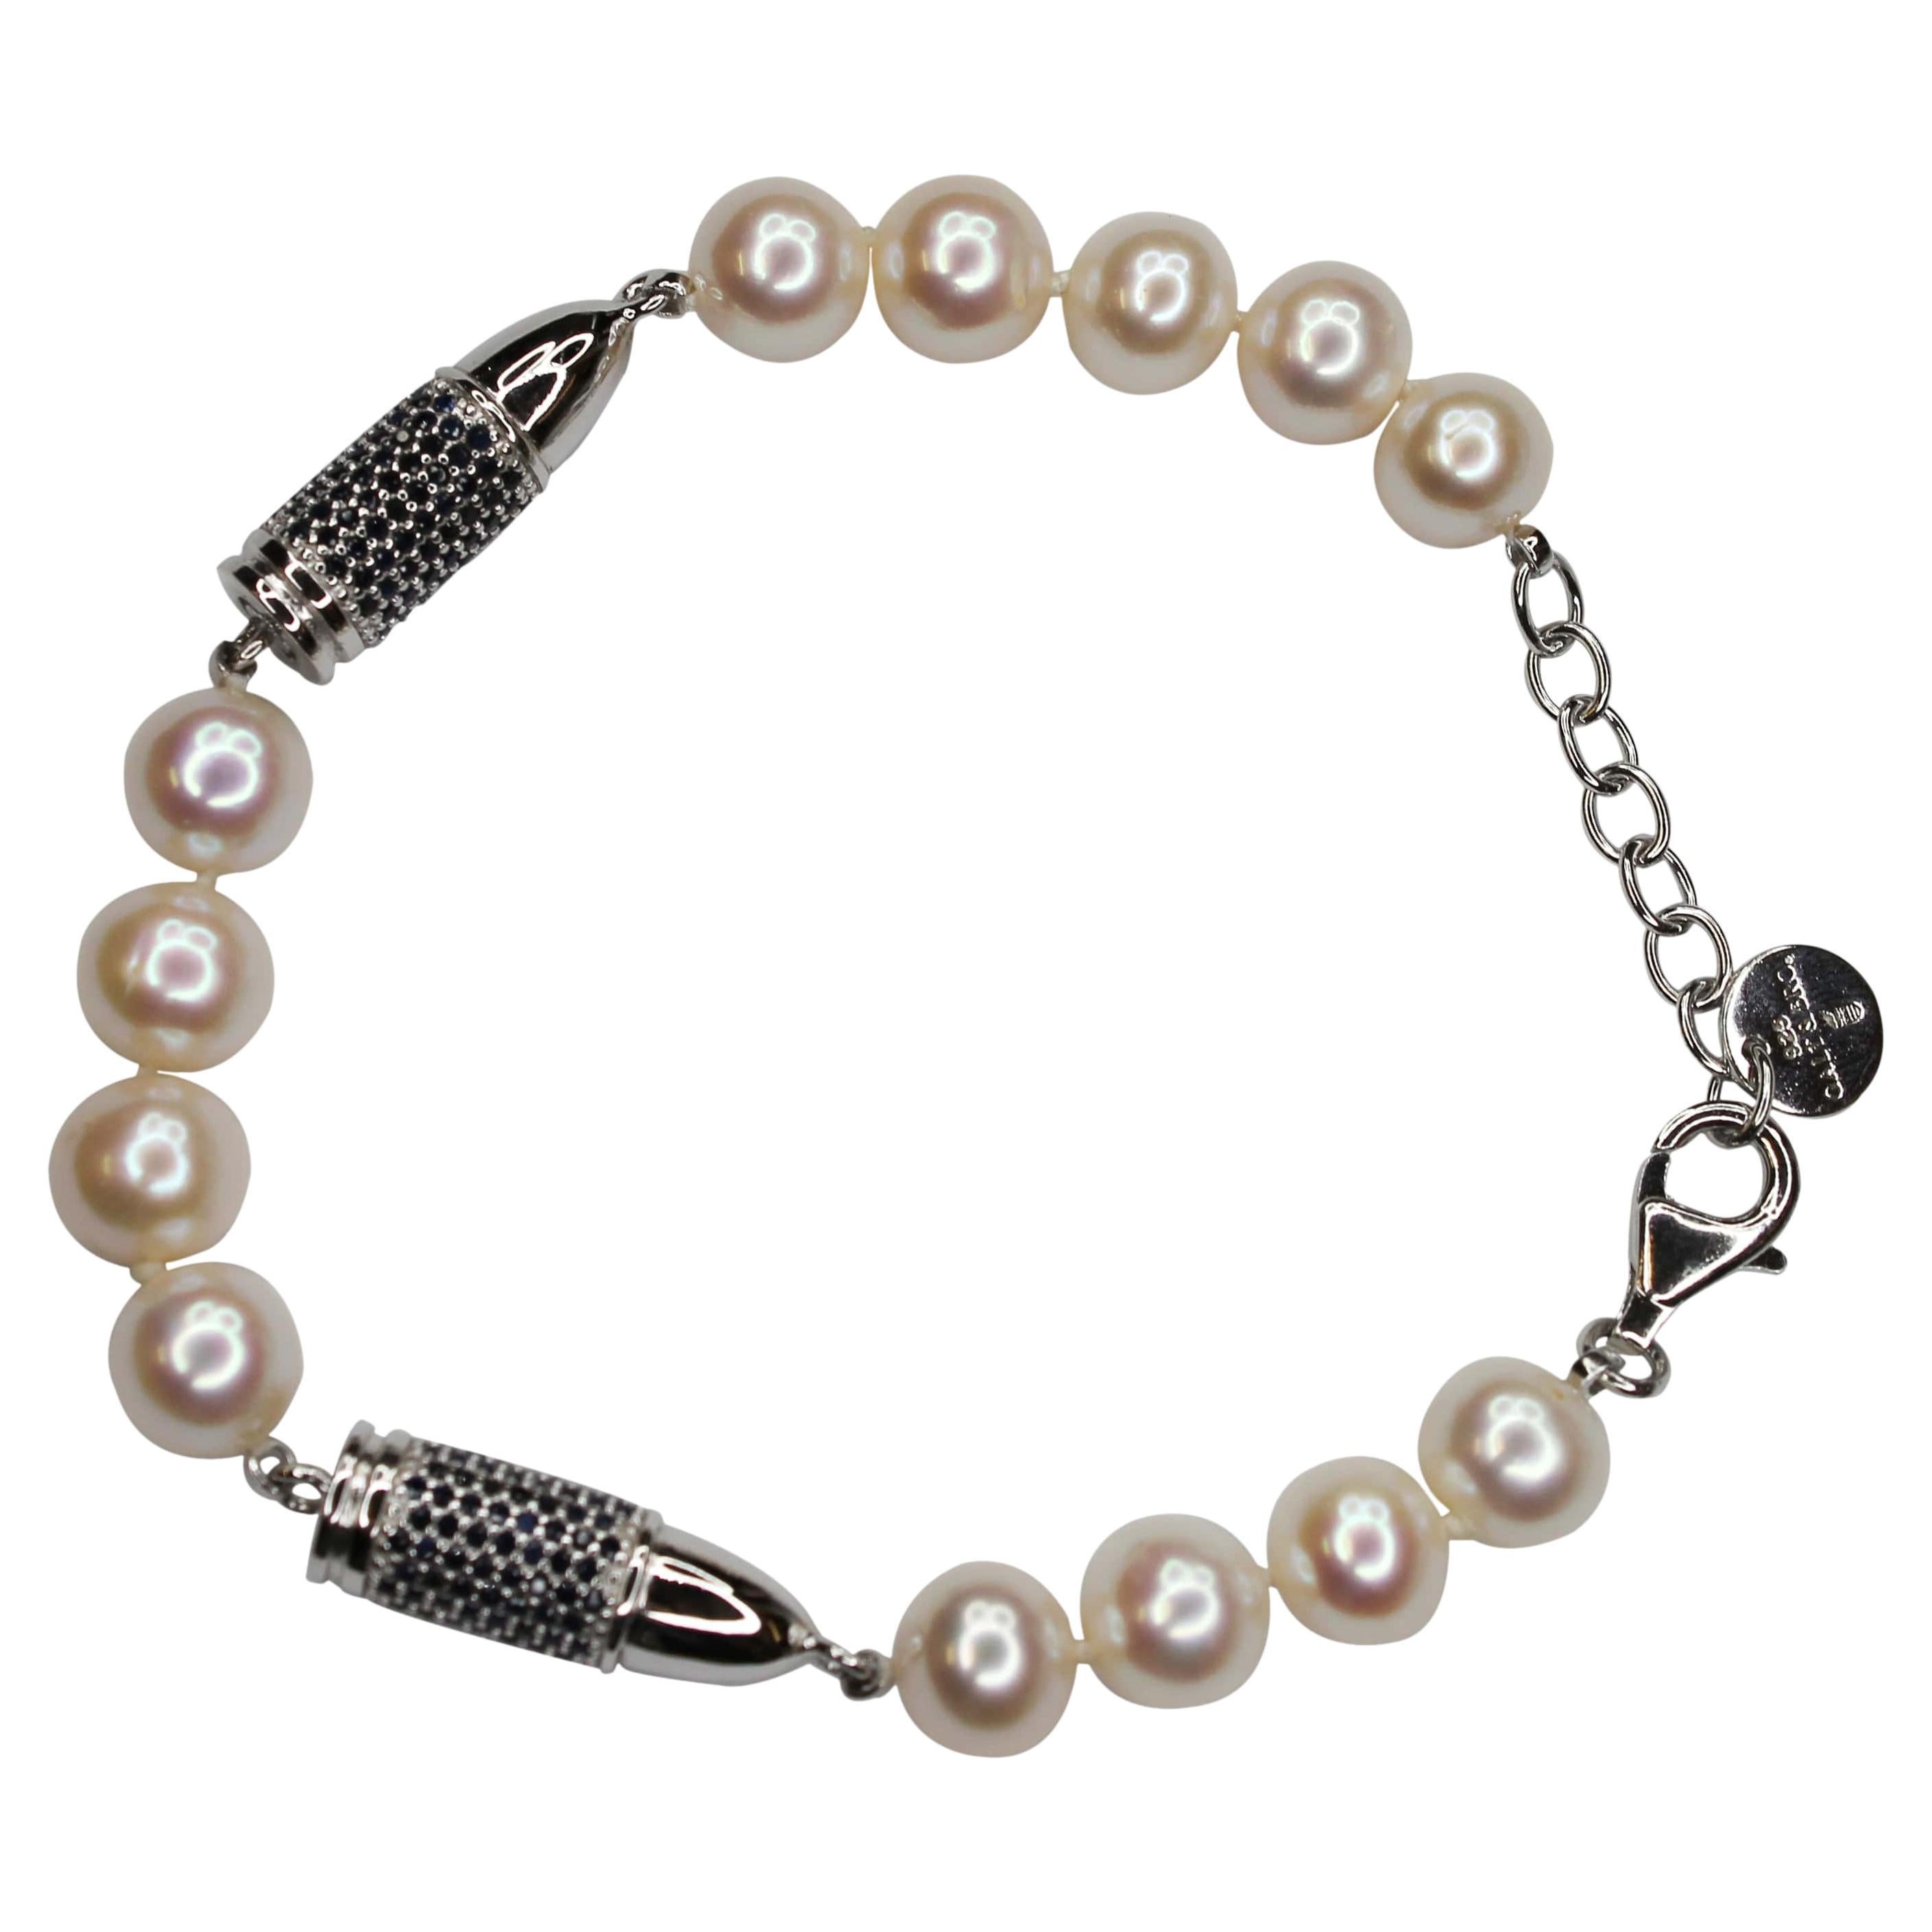 Bracelet en argent sterling avec saphirs bleus sertis en pavé et perles blanches en forme de balle